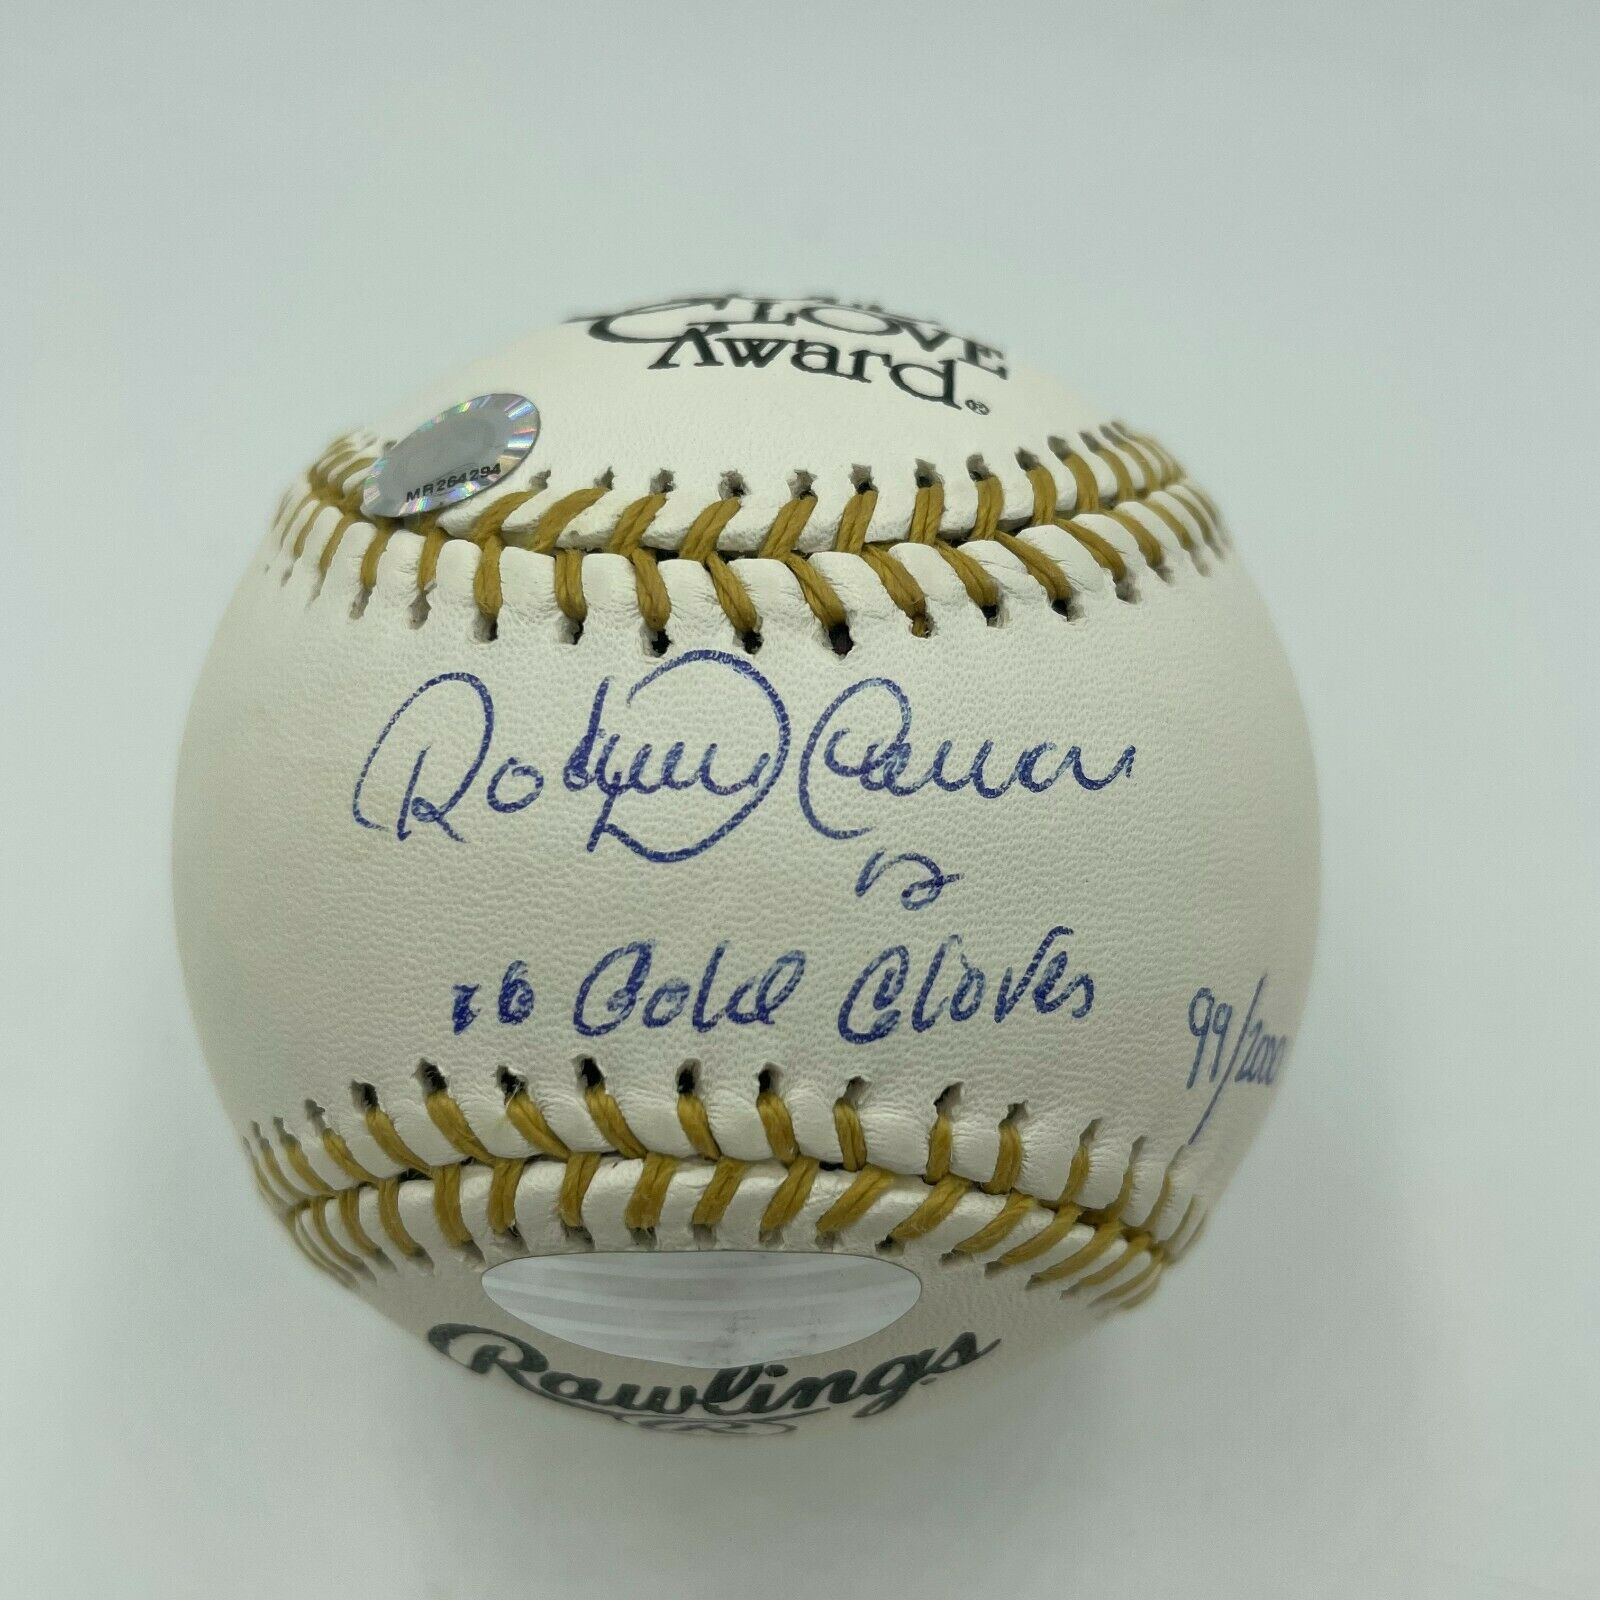 Roberto Alomar Gold Glove  Gold gloves, Baseball, Vintage baseball